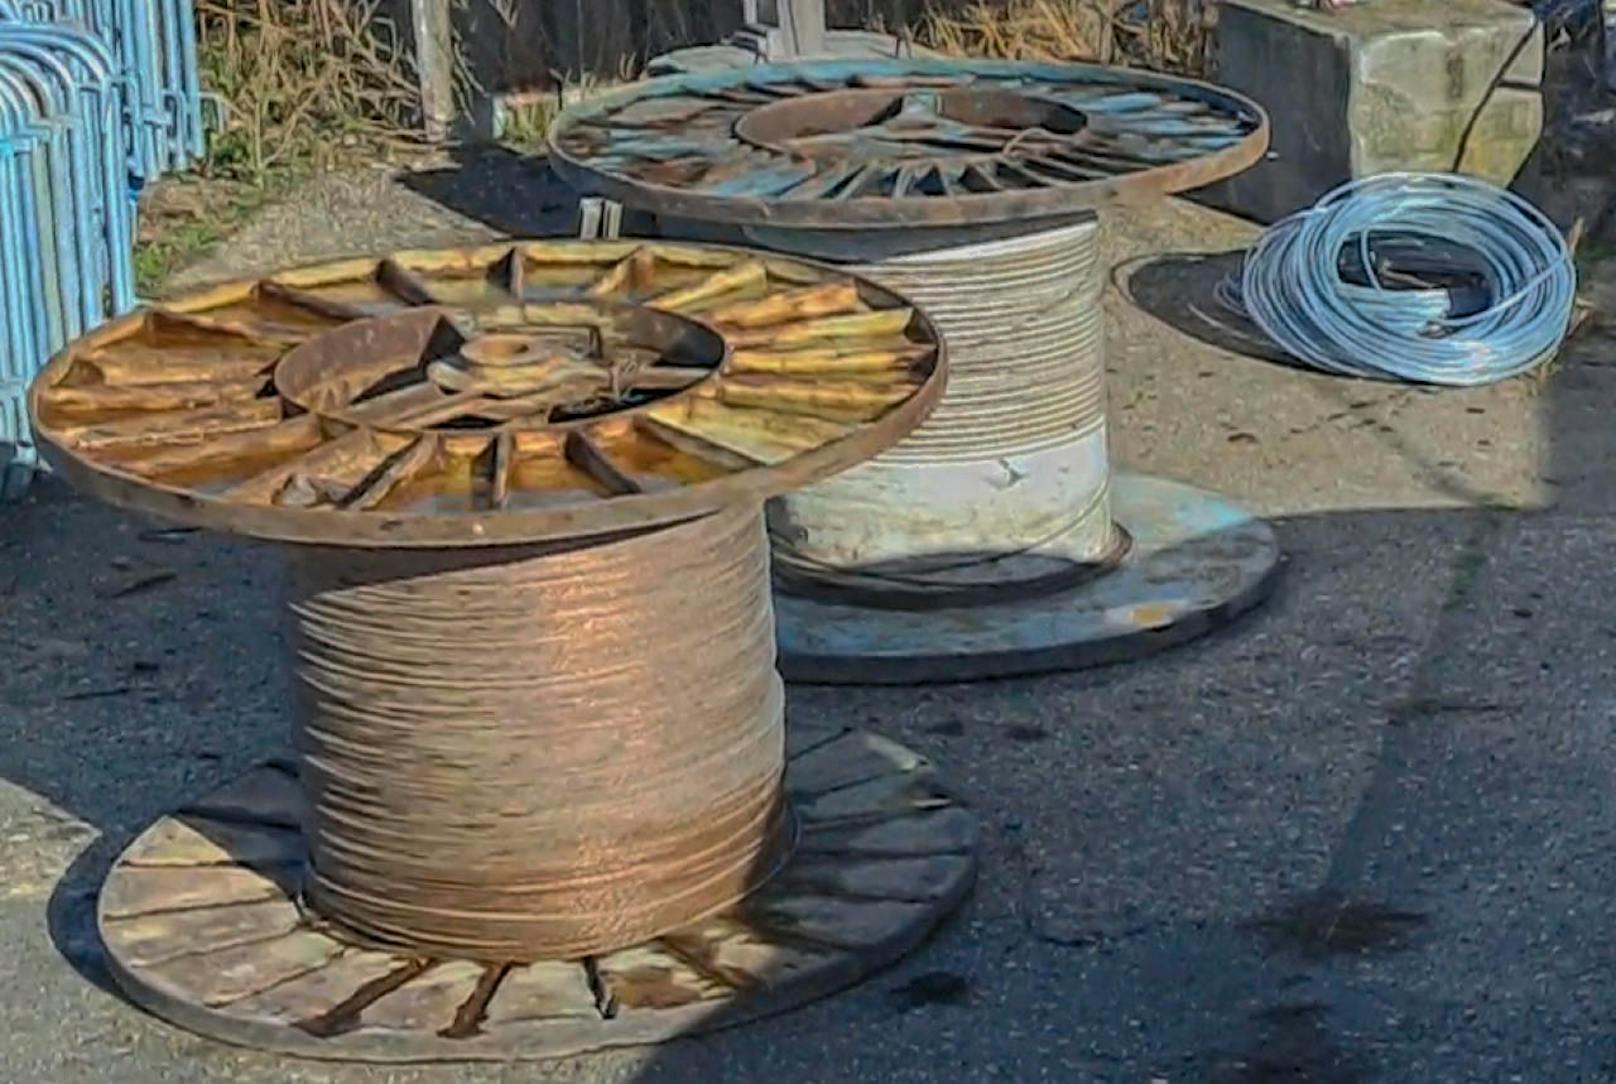 Kupferdieb tauscht 1.500-Meter-Kabel gegen Fenster